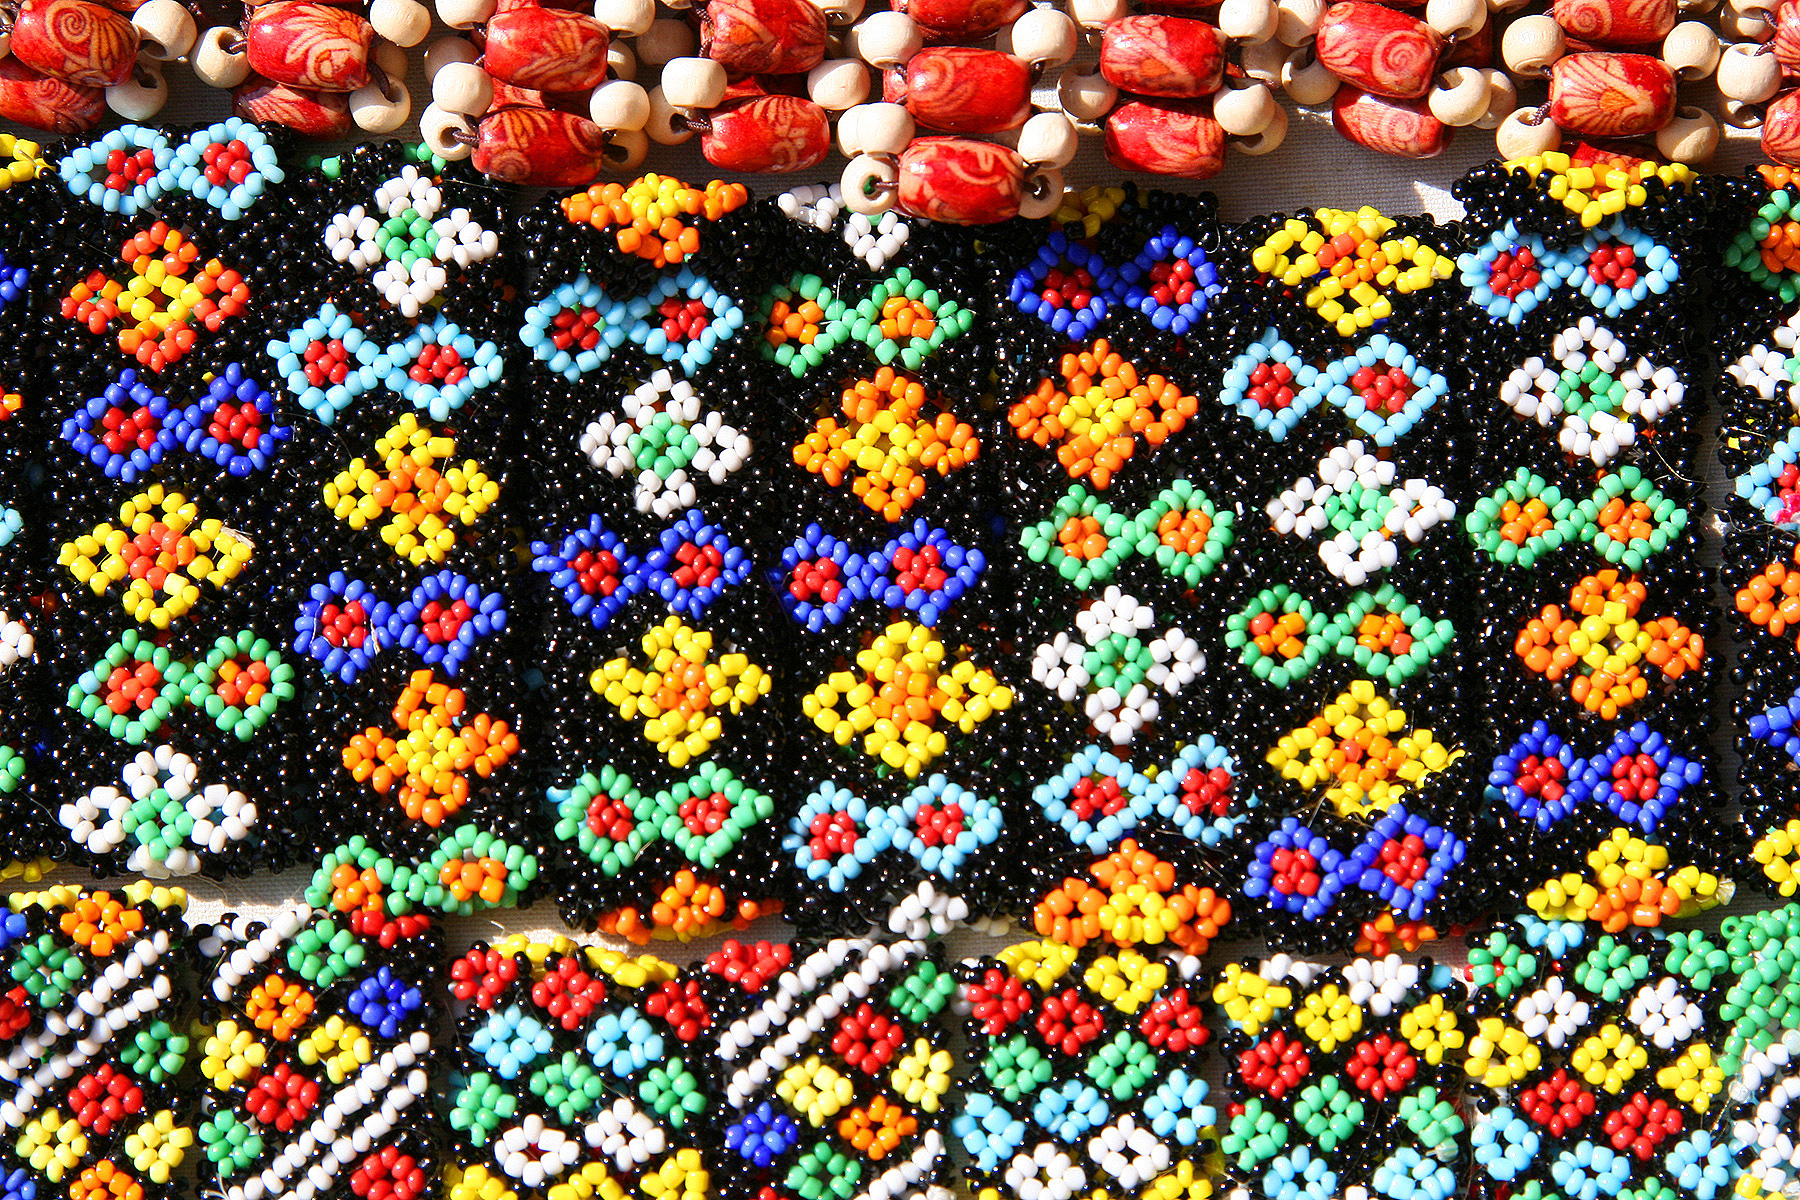 Beads bracelets